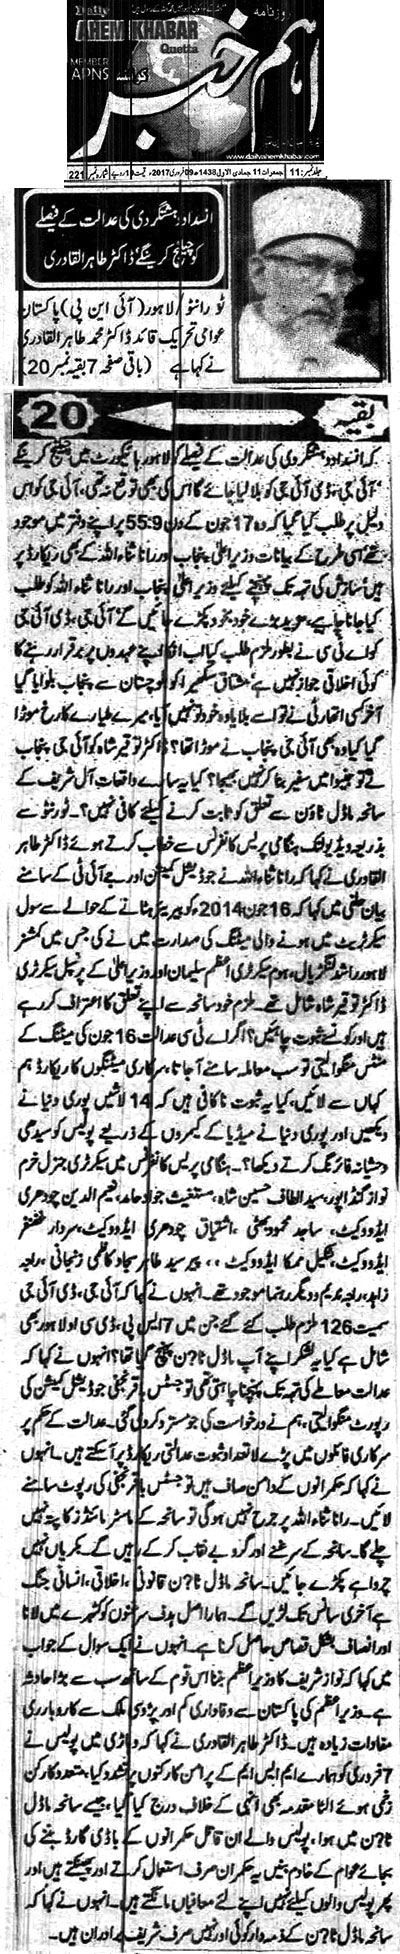 Minhaj-ul-Quran  Print Media Coverage Daily Aham Khabar